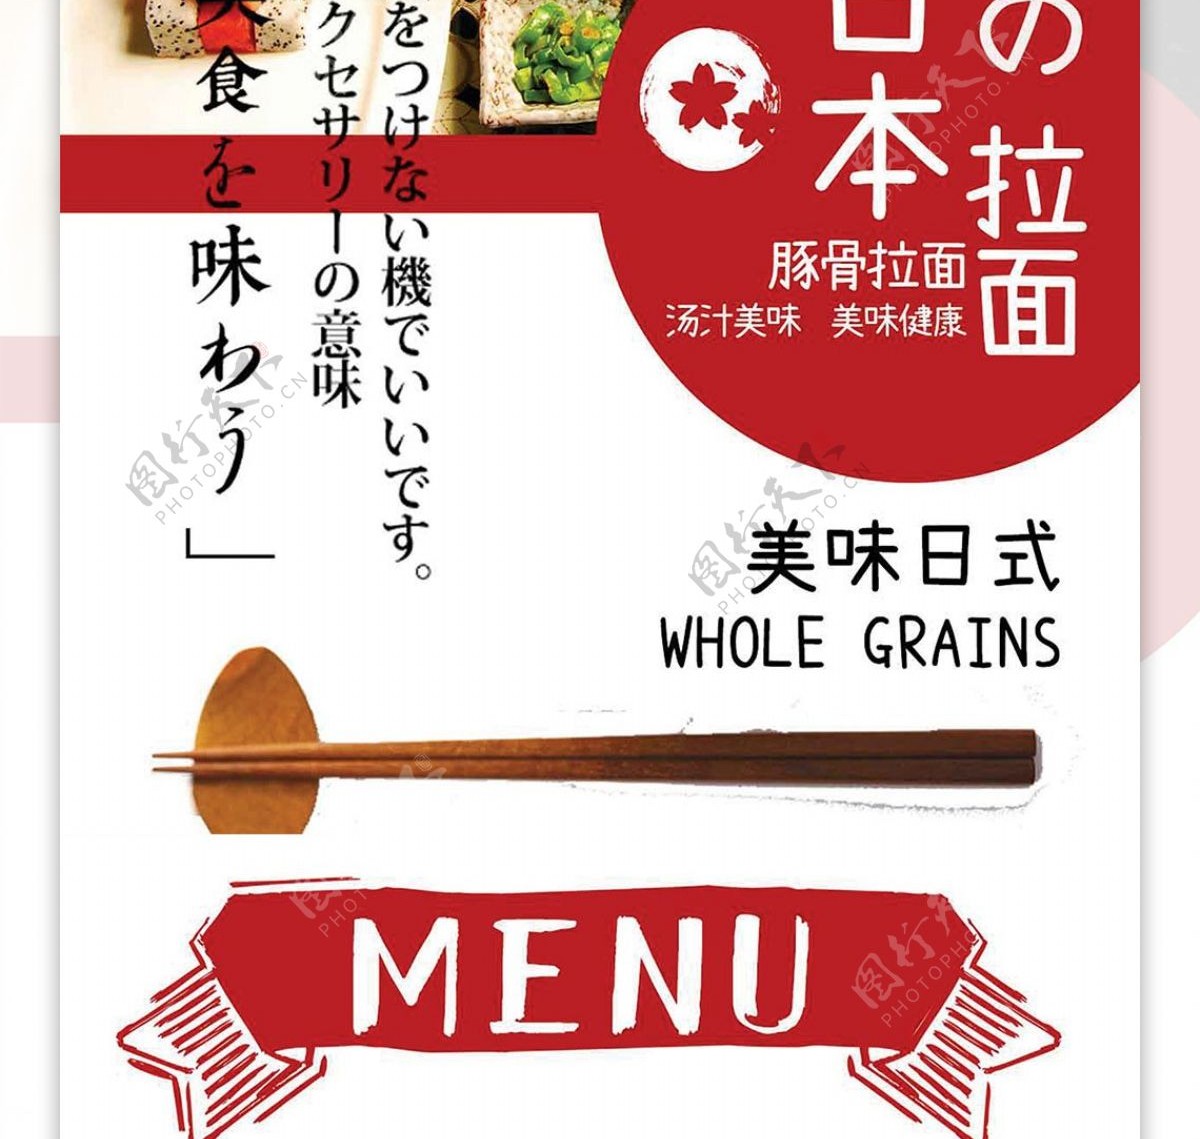 白色简约大气日本拉面菜谱设计